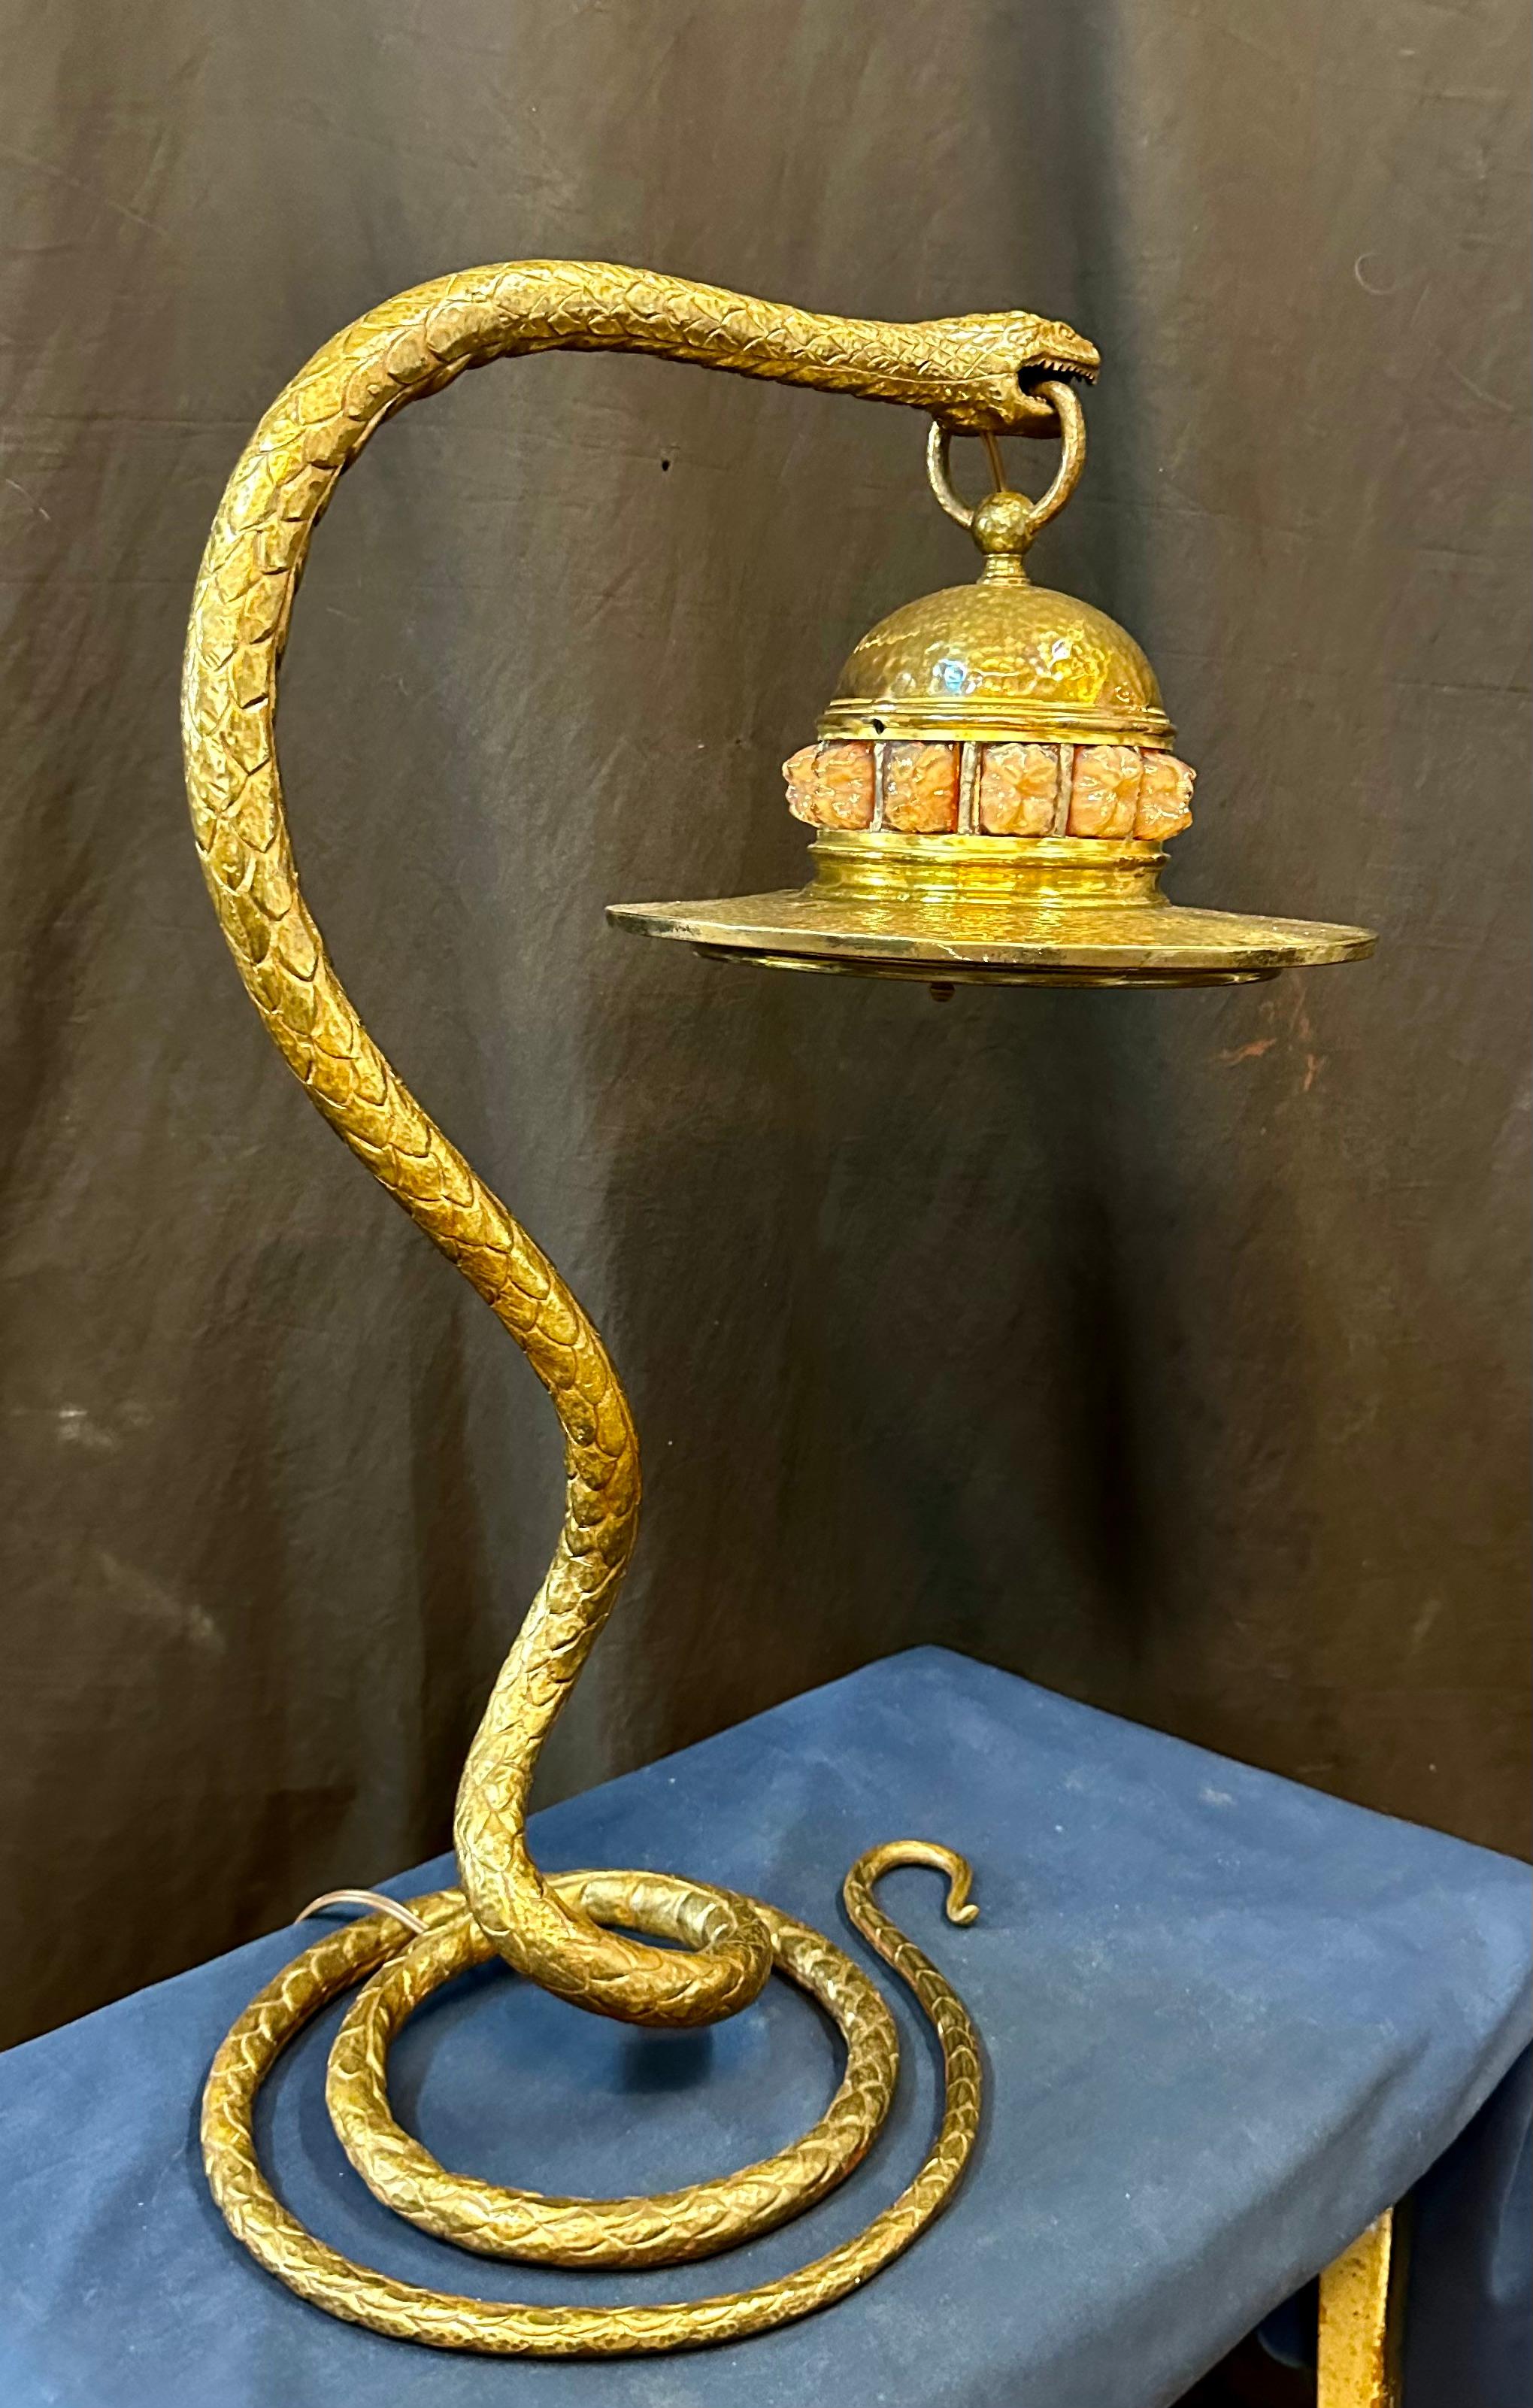 snake lamp